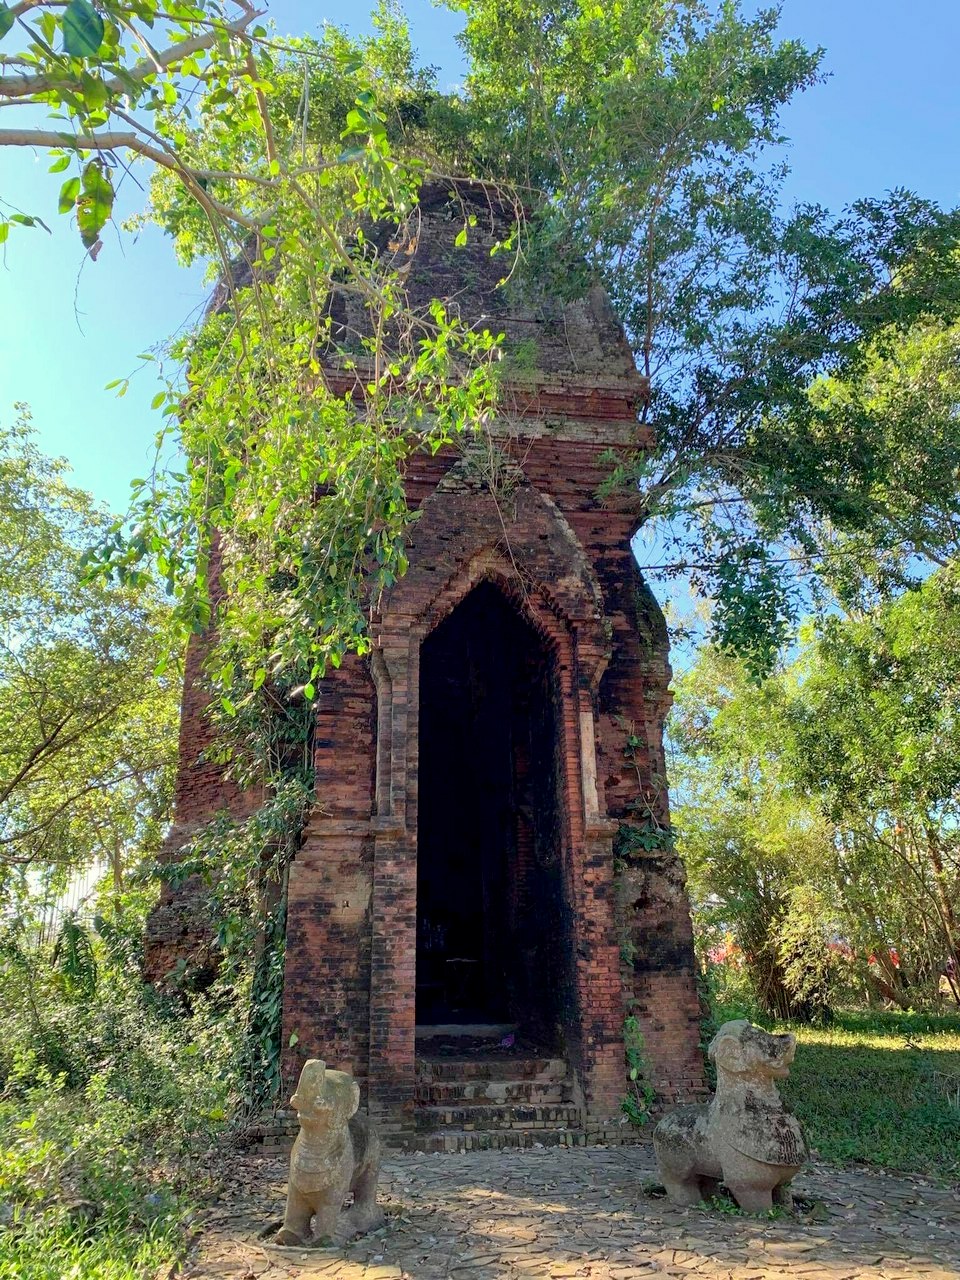  Tháp  Bằng An nhìn từ  cổng chính.  